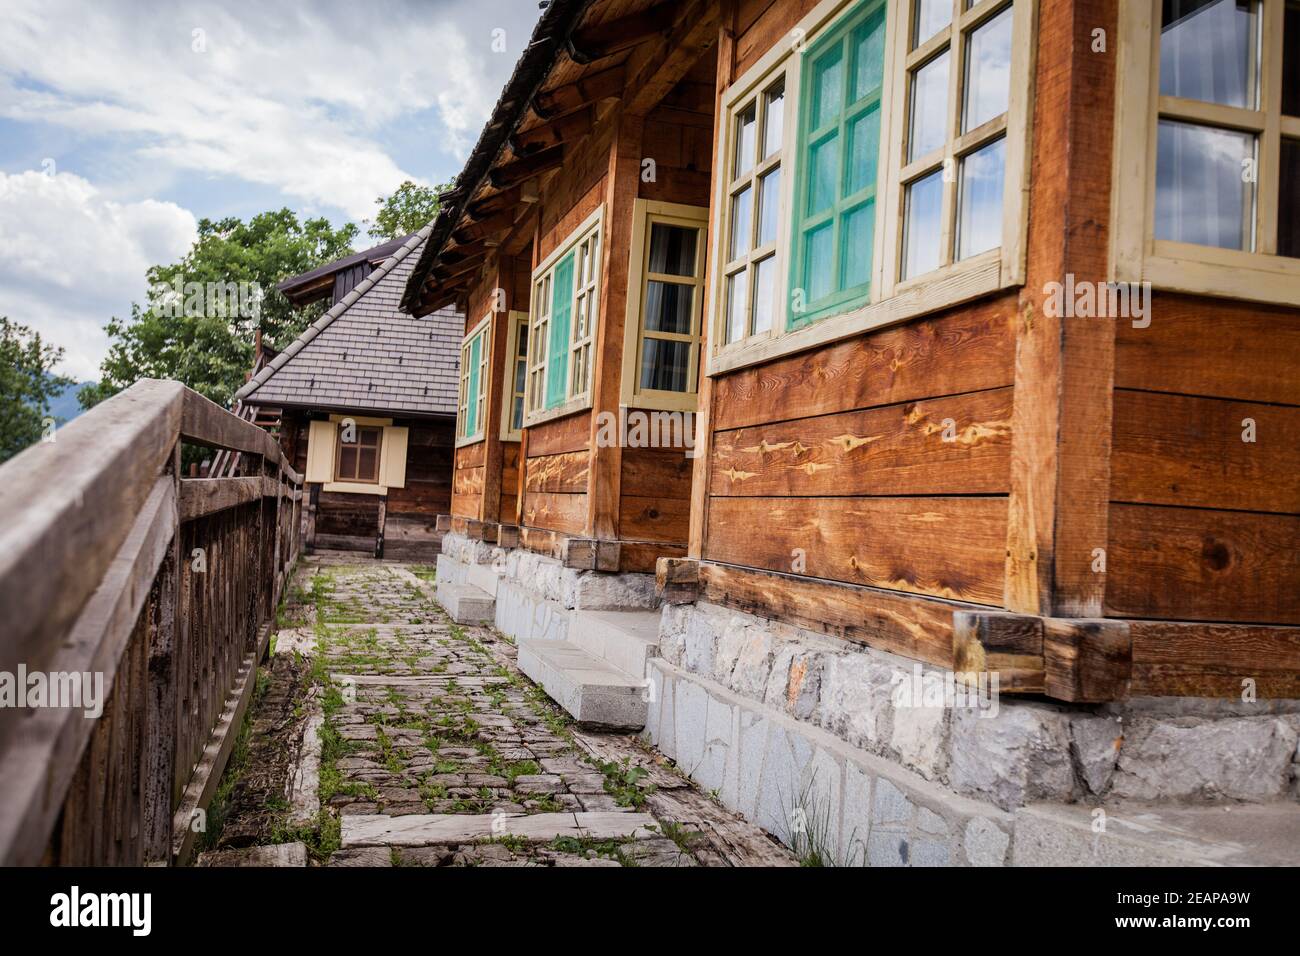 Ethno villaggio Drvengrad, Mokra Gora, tradizionale eco villaggio costruito dal famoso regista Emir Kusturica, attrazione turistica Foto Stock